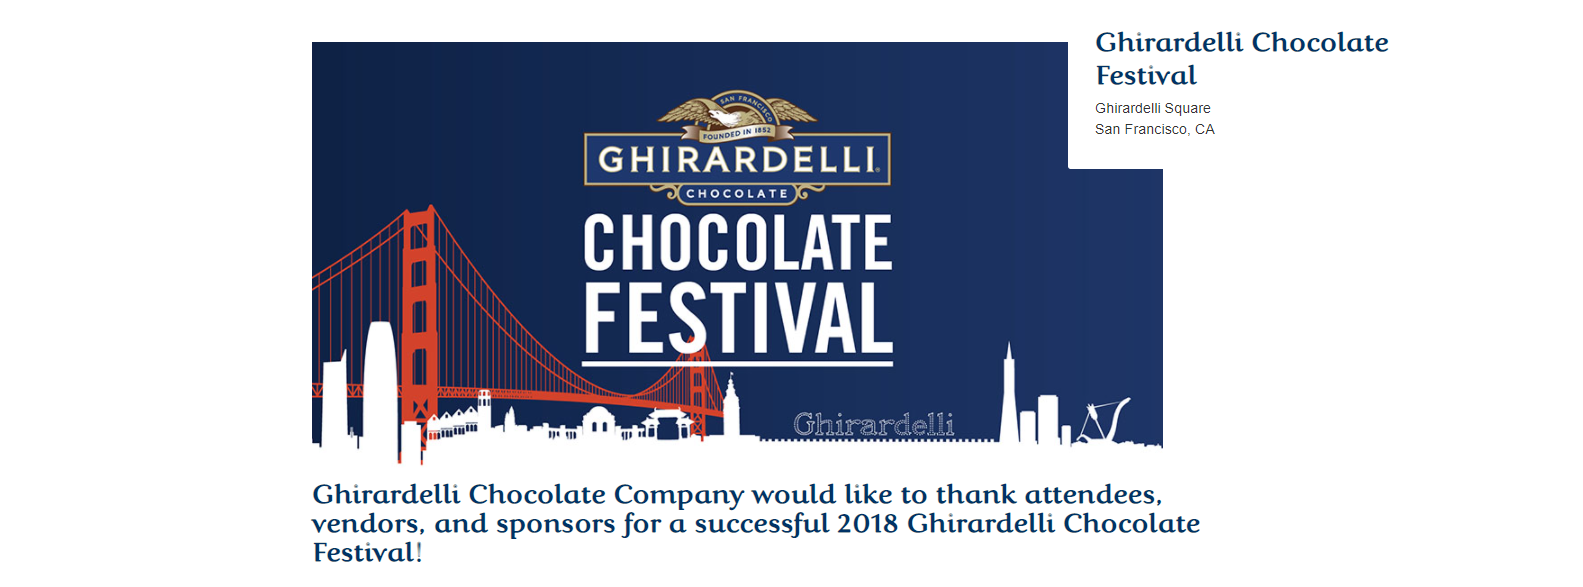 Ghirardelli Chocolate Festival